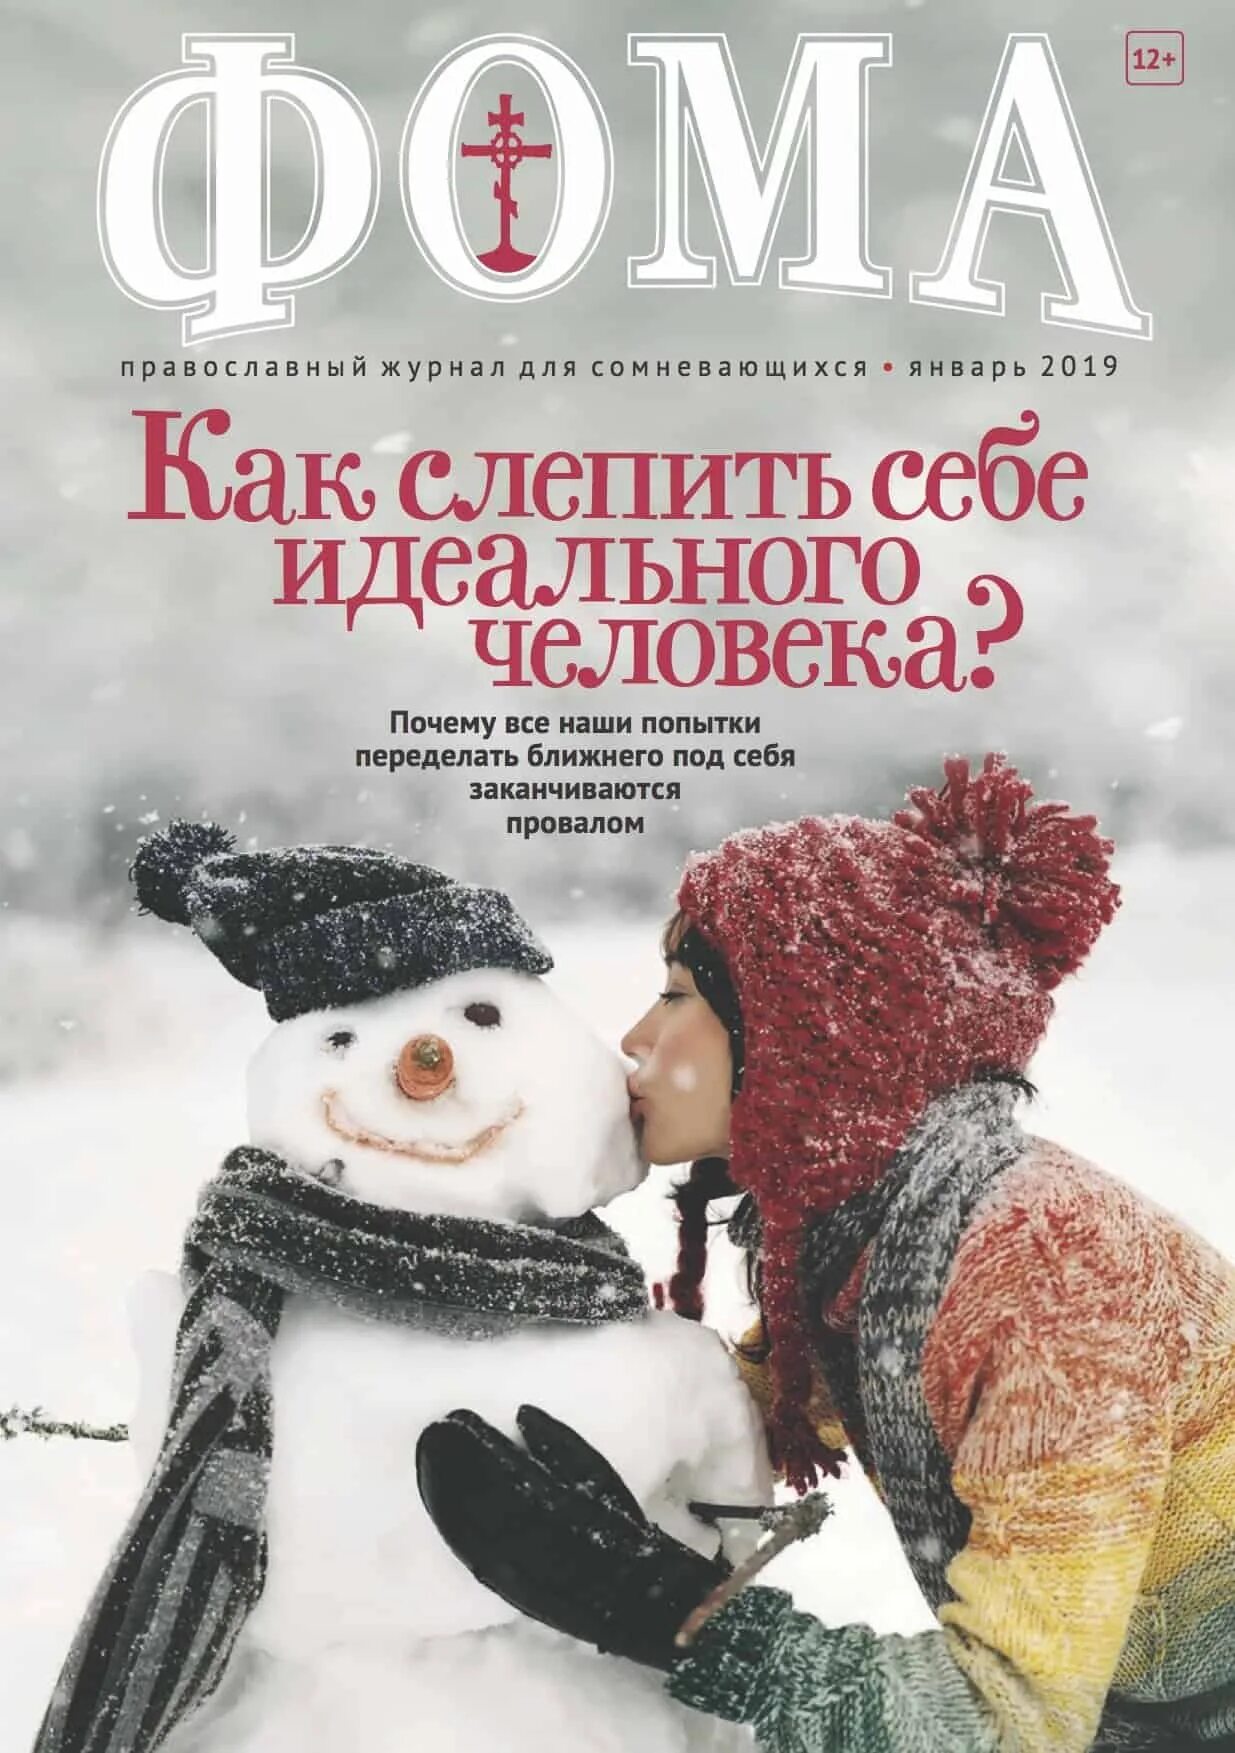 Сайт православного журнала. Православный журнал.